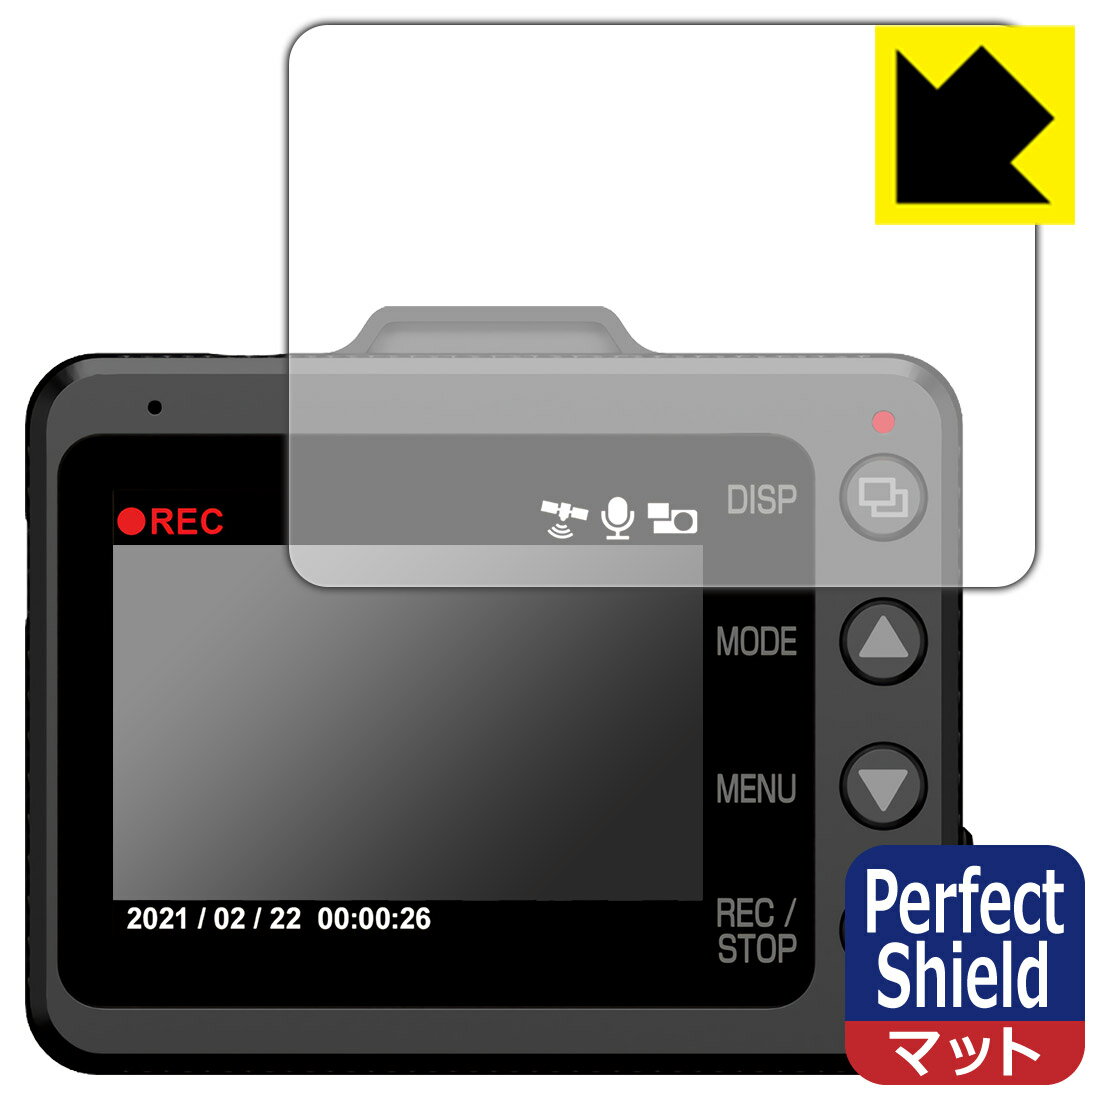 Perfect Shield ドライブレコーダー SN-TW99c/SN-TW84d/SN-TW71d/SN-TW9900d/WDT700c 日本製 自社製造直販